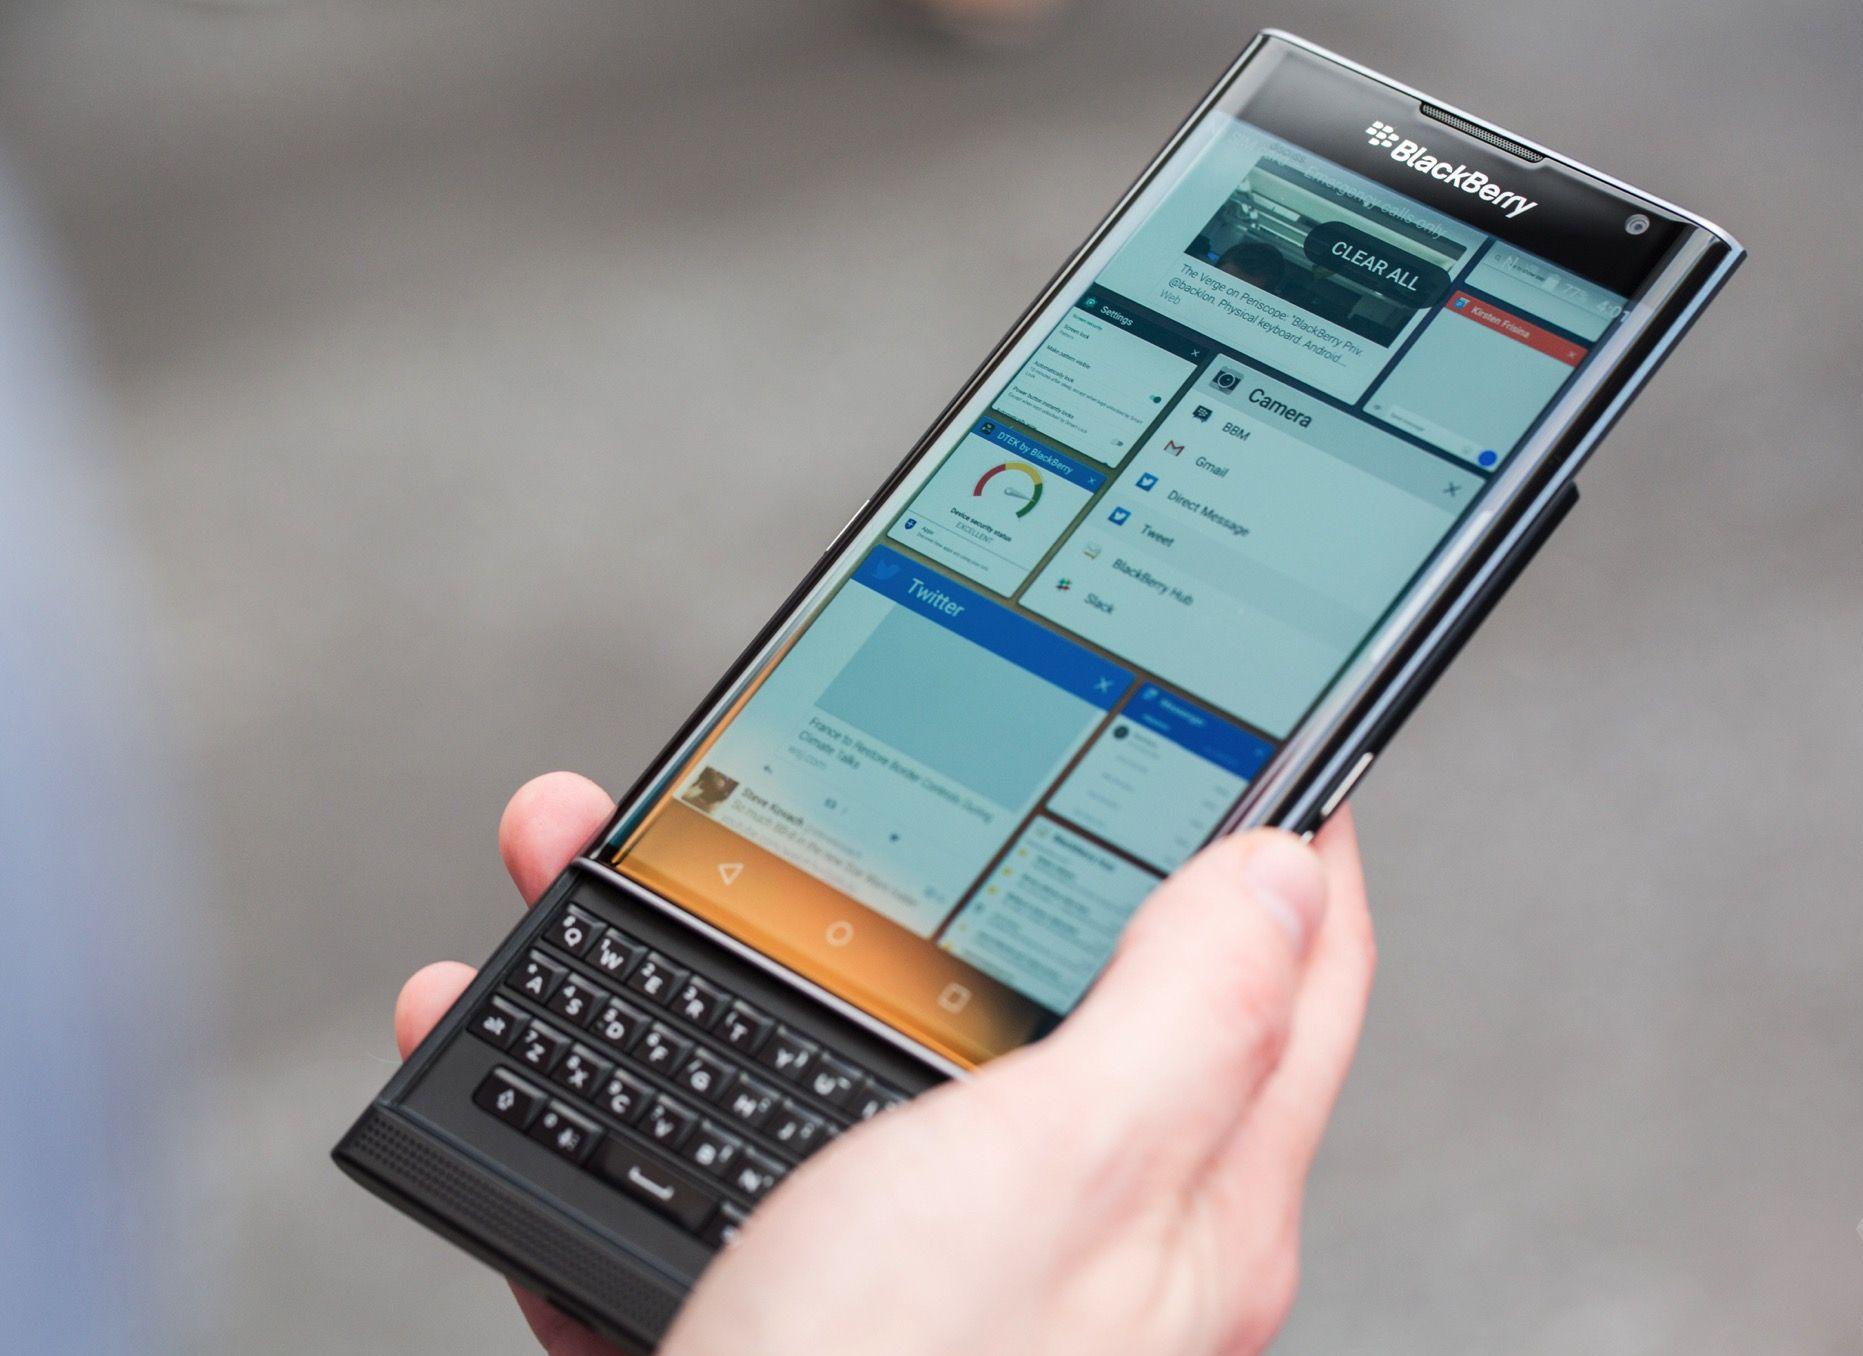 12 điện thoại BlackBerry từng khiến dân công nghệ phát cuồng